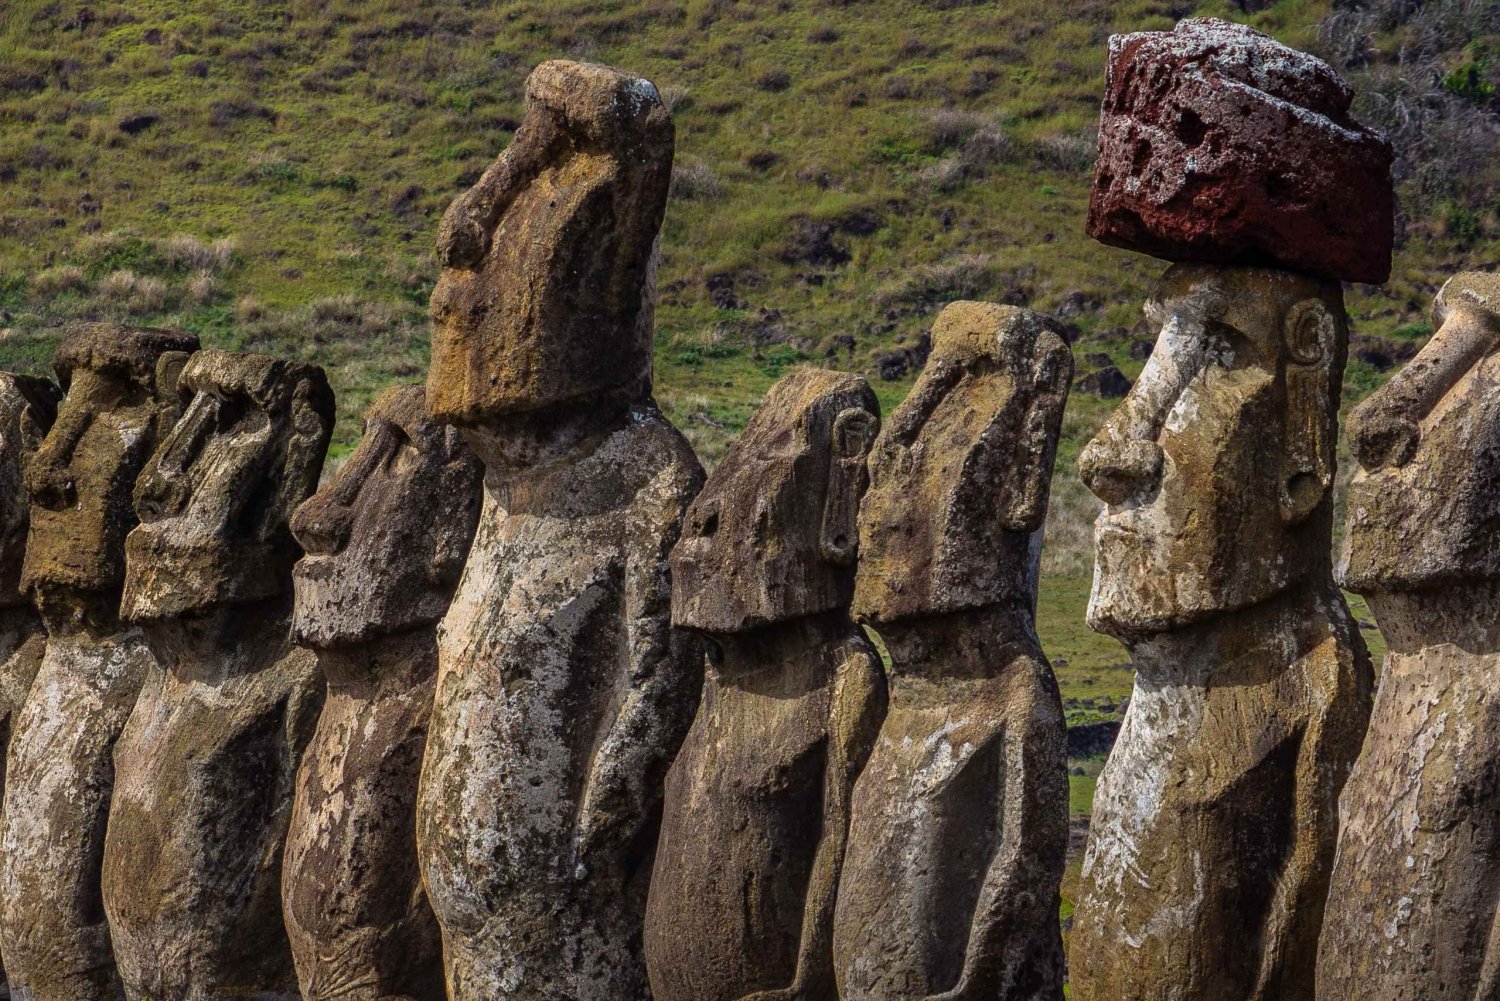 Fuld dag med Moai og Mistery